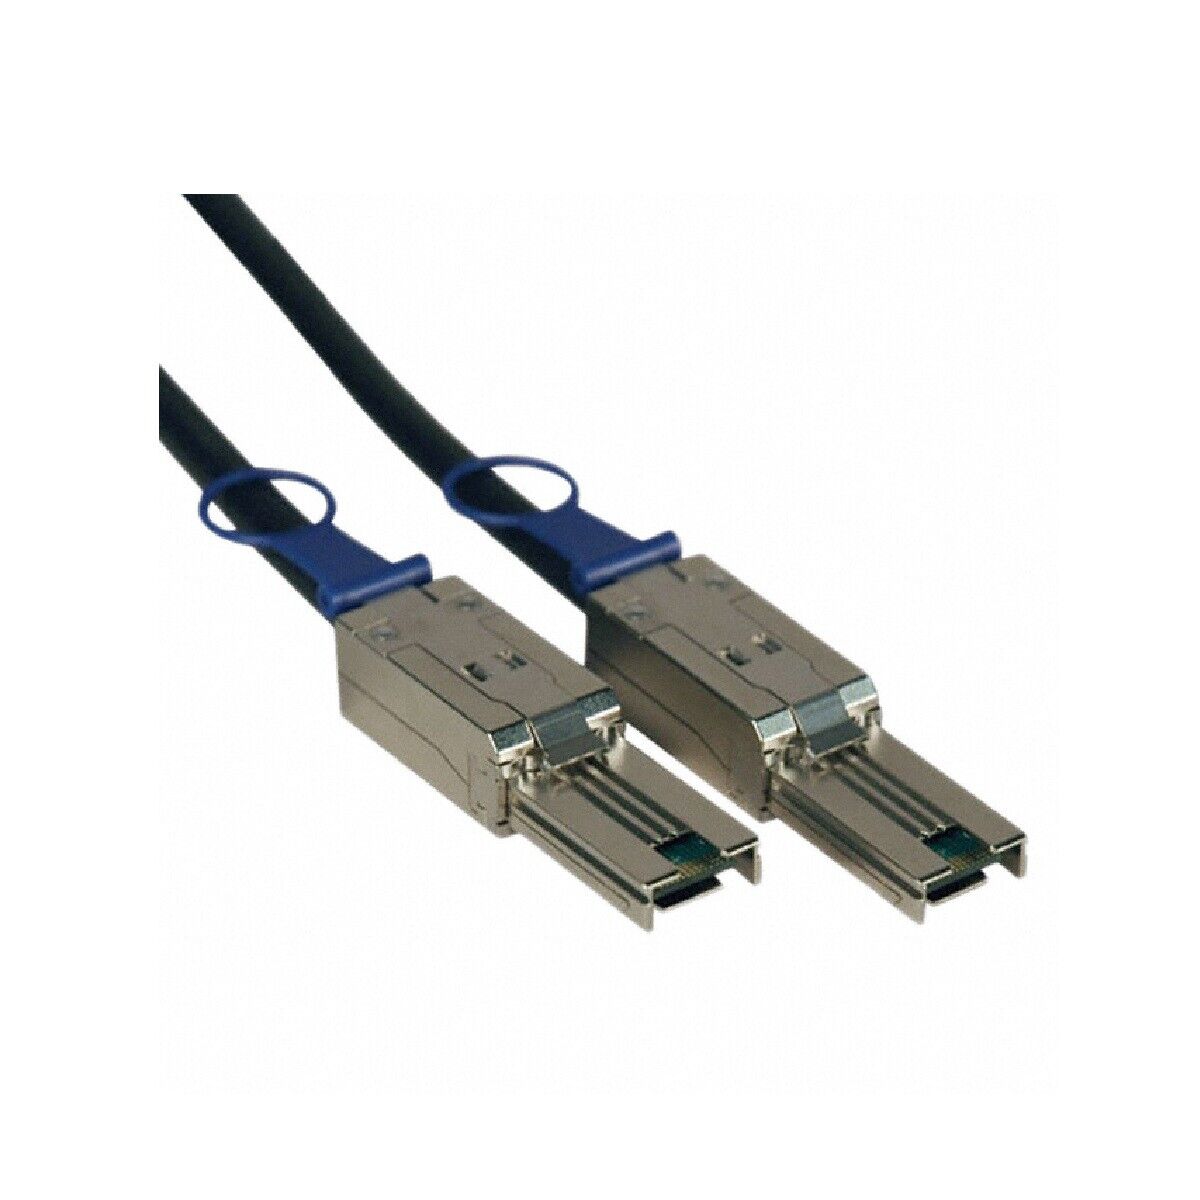 Tripp Lite S524-02M External SAS Cable, 4 Lane - mini-SAS (SFF-8088) to